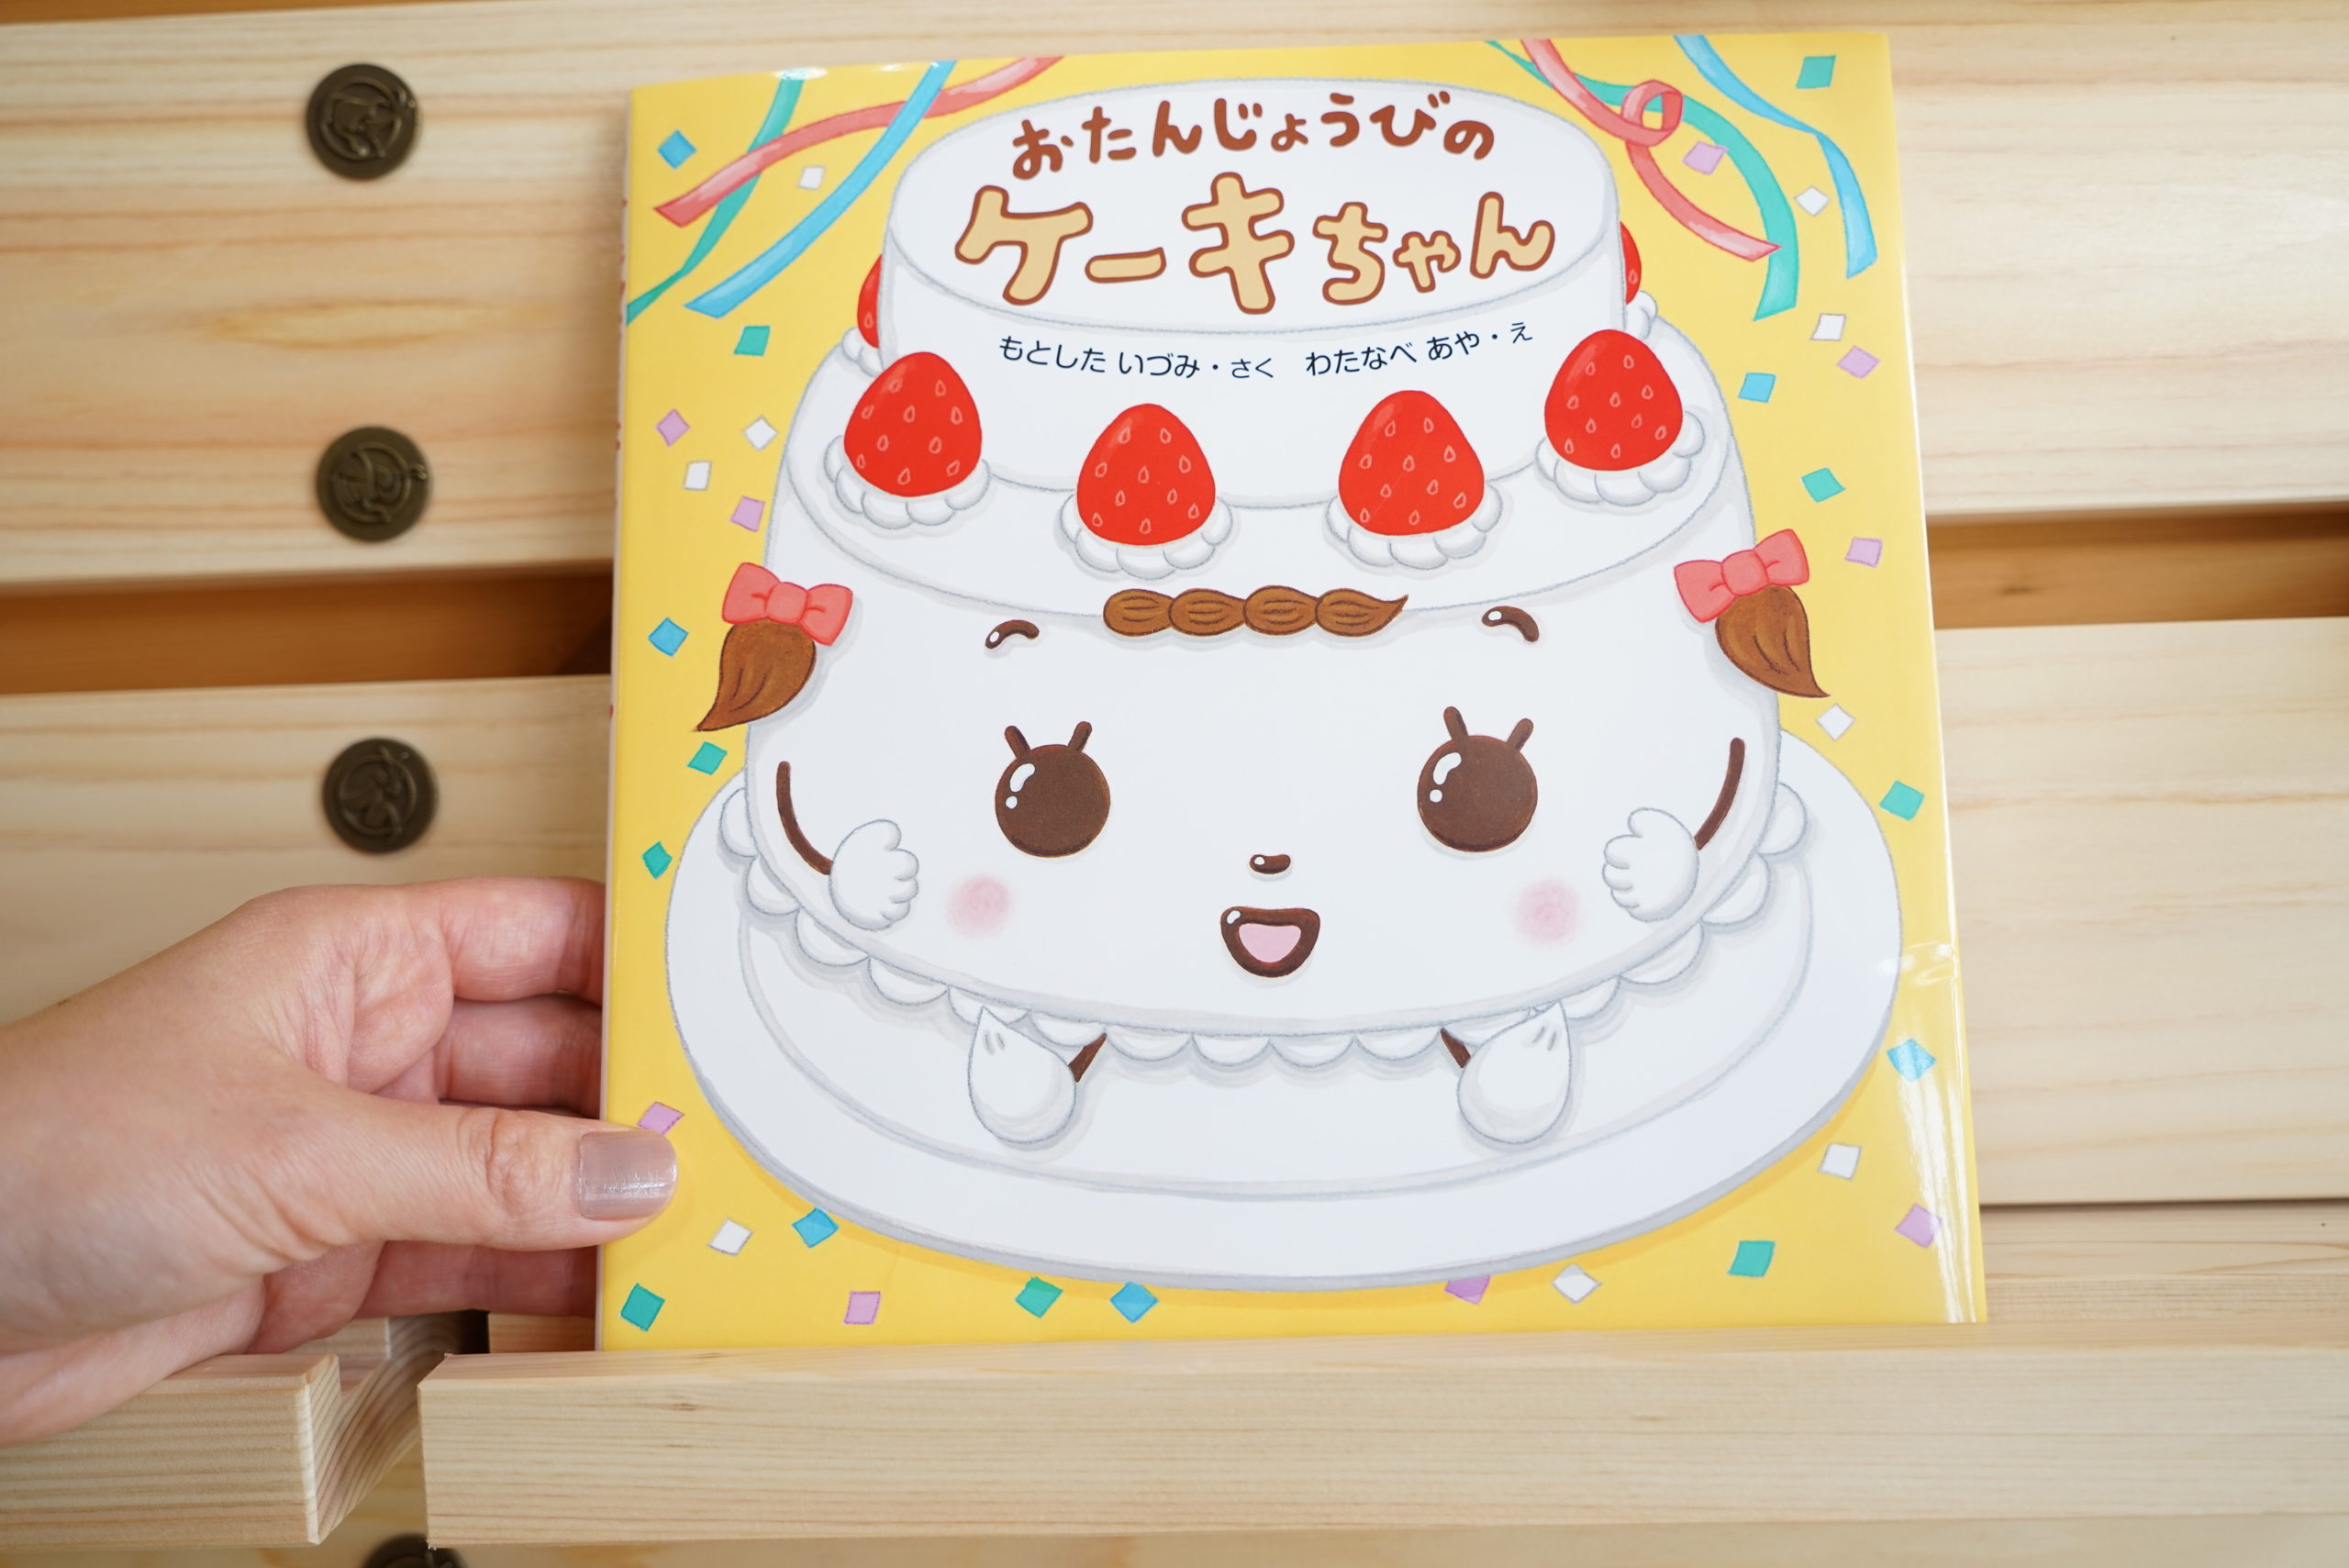 おたんじょうびのケーキちゃん リビング書店のおすすめ絵本ブログ